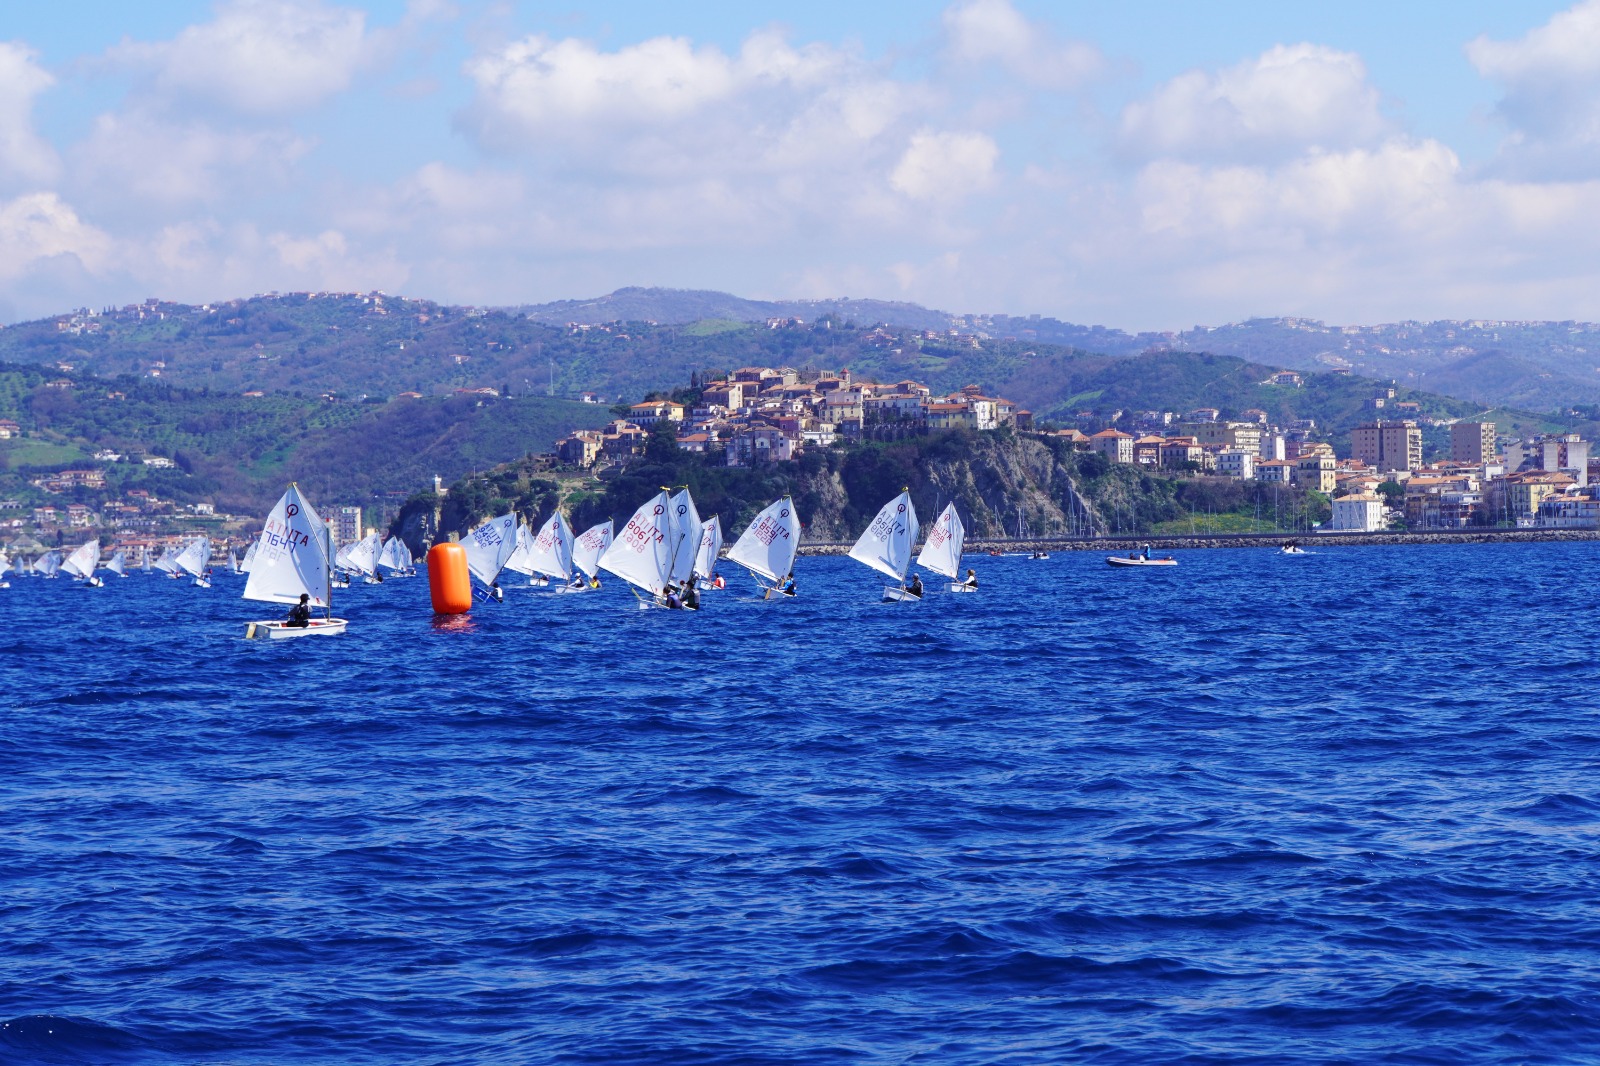 300 timonieri pronti a regatare nel mare di Agropoli per il «Trofeo Optimist Italia Kinder Joy of Moving»